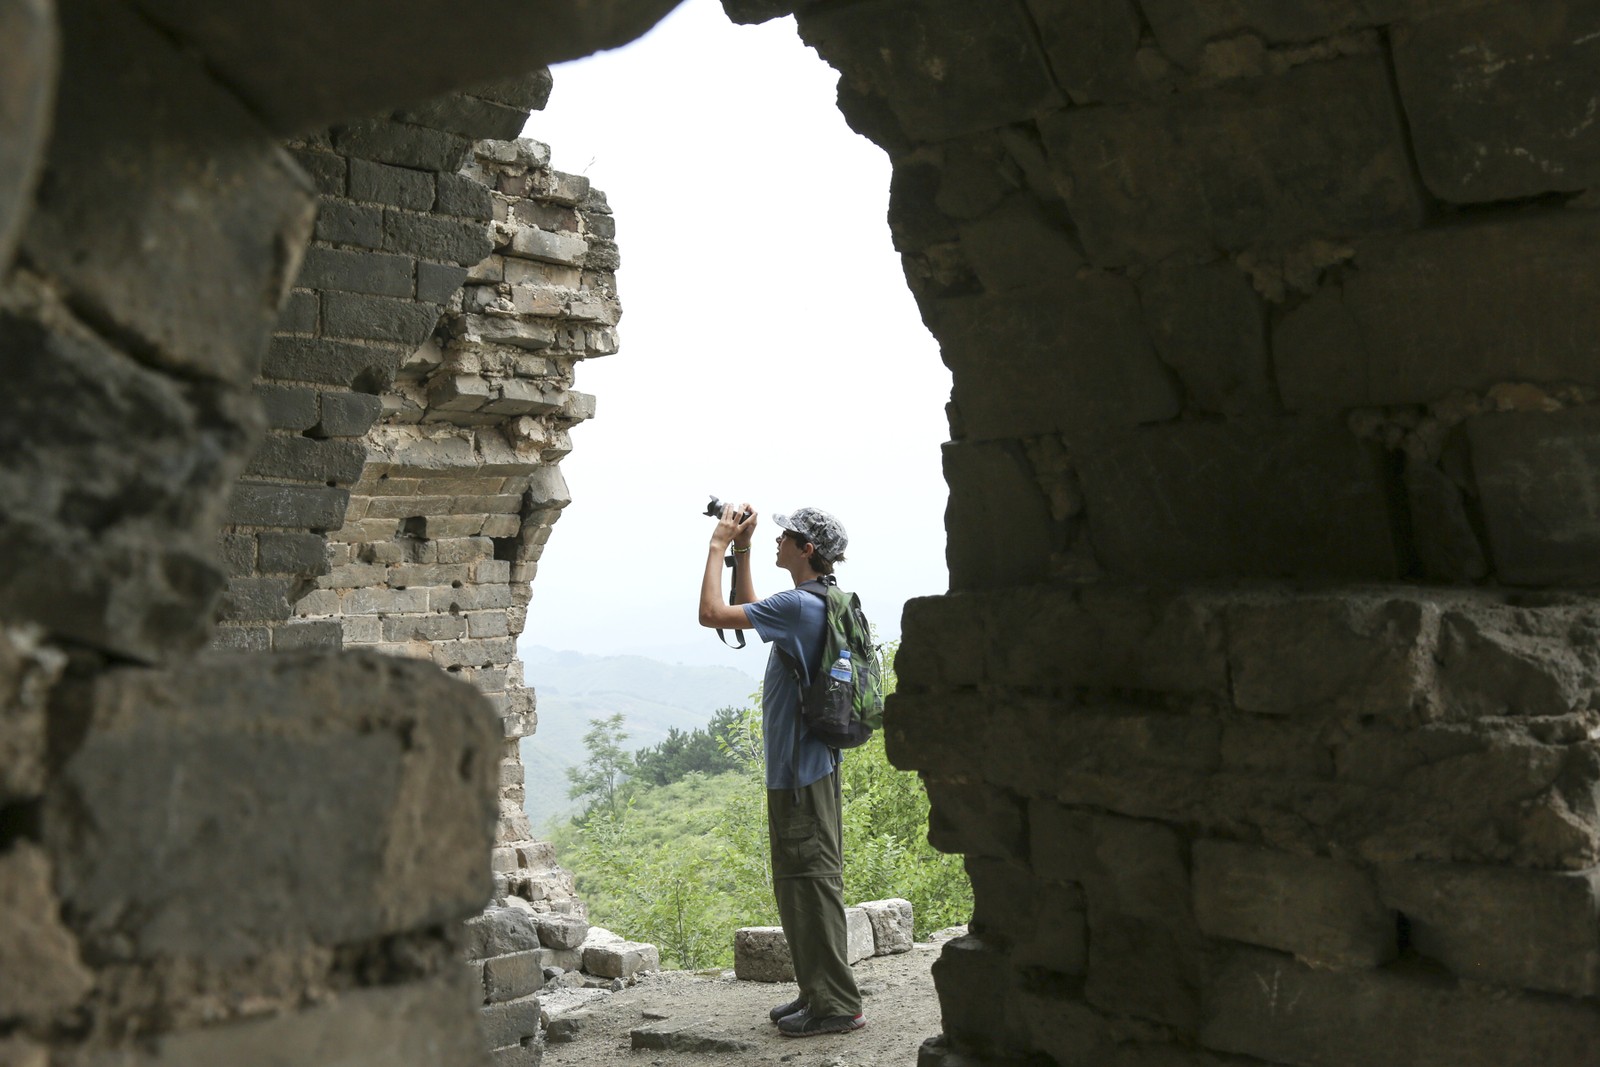 Jovem tira uma foto de um arco em ruínas em uma torre de vigia ao longo da Grande Muralha da China — Foto: Robb Kendrick/The New York Times